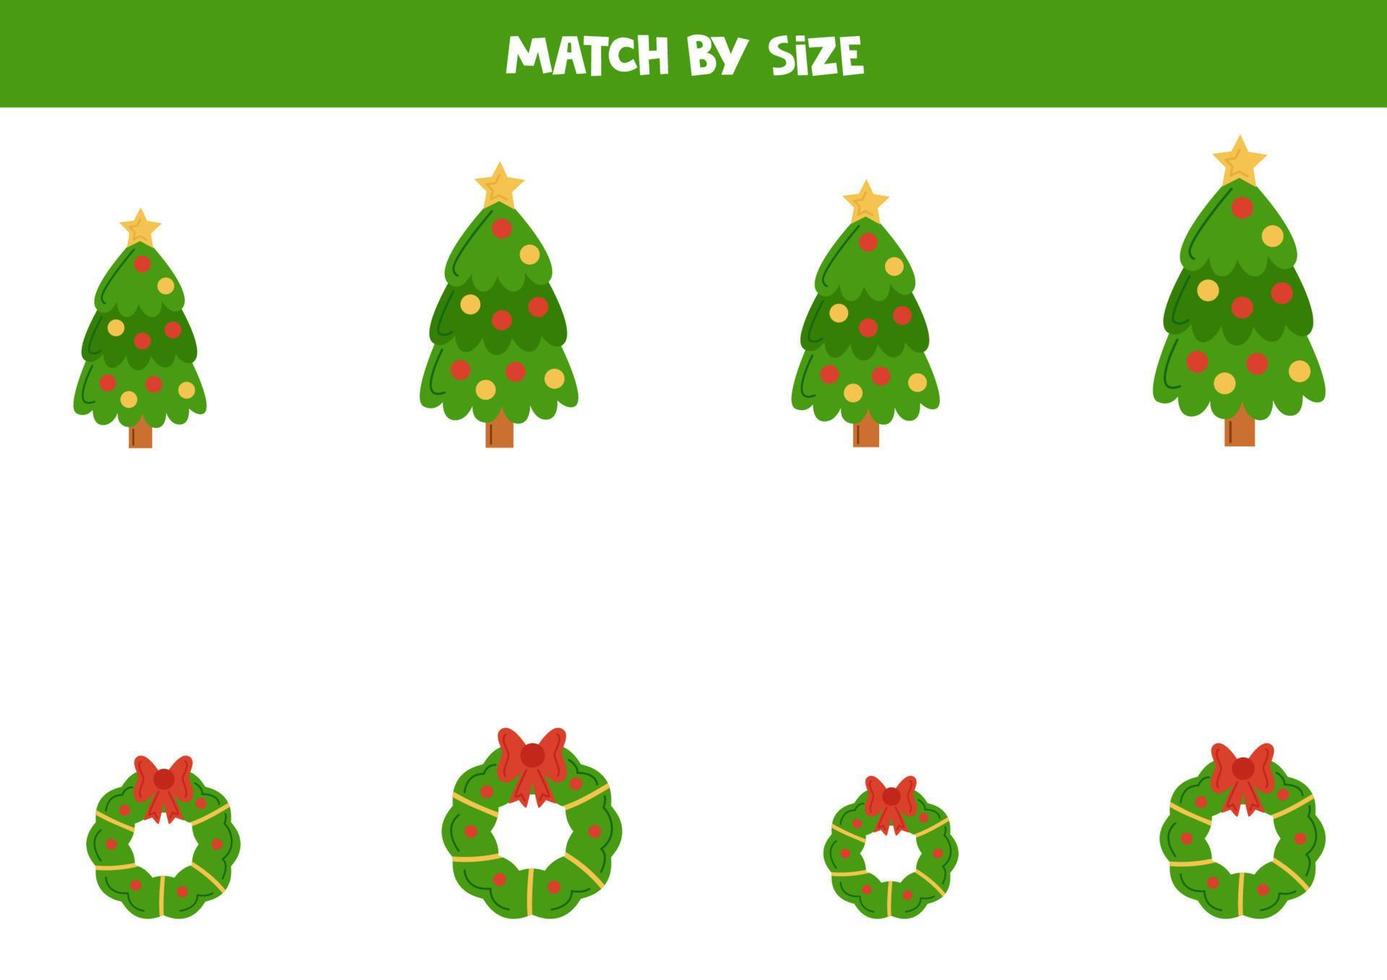 matchande spel för förskola ungar. match jul träd och kransar förbi storlek. vektor